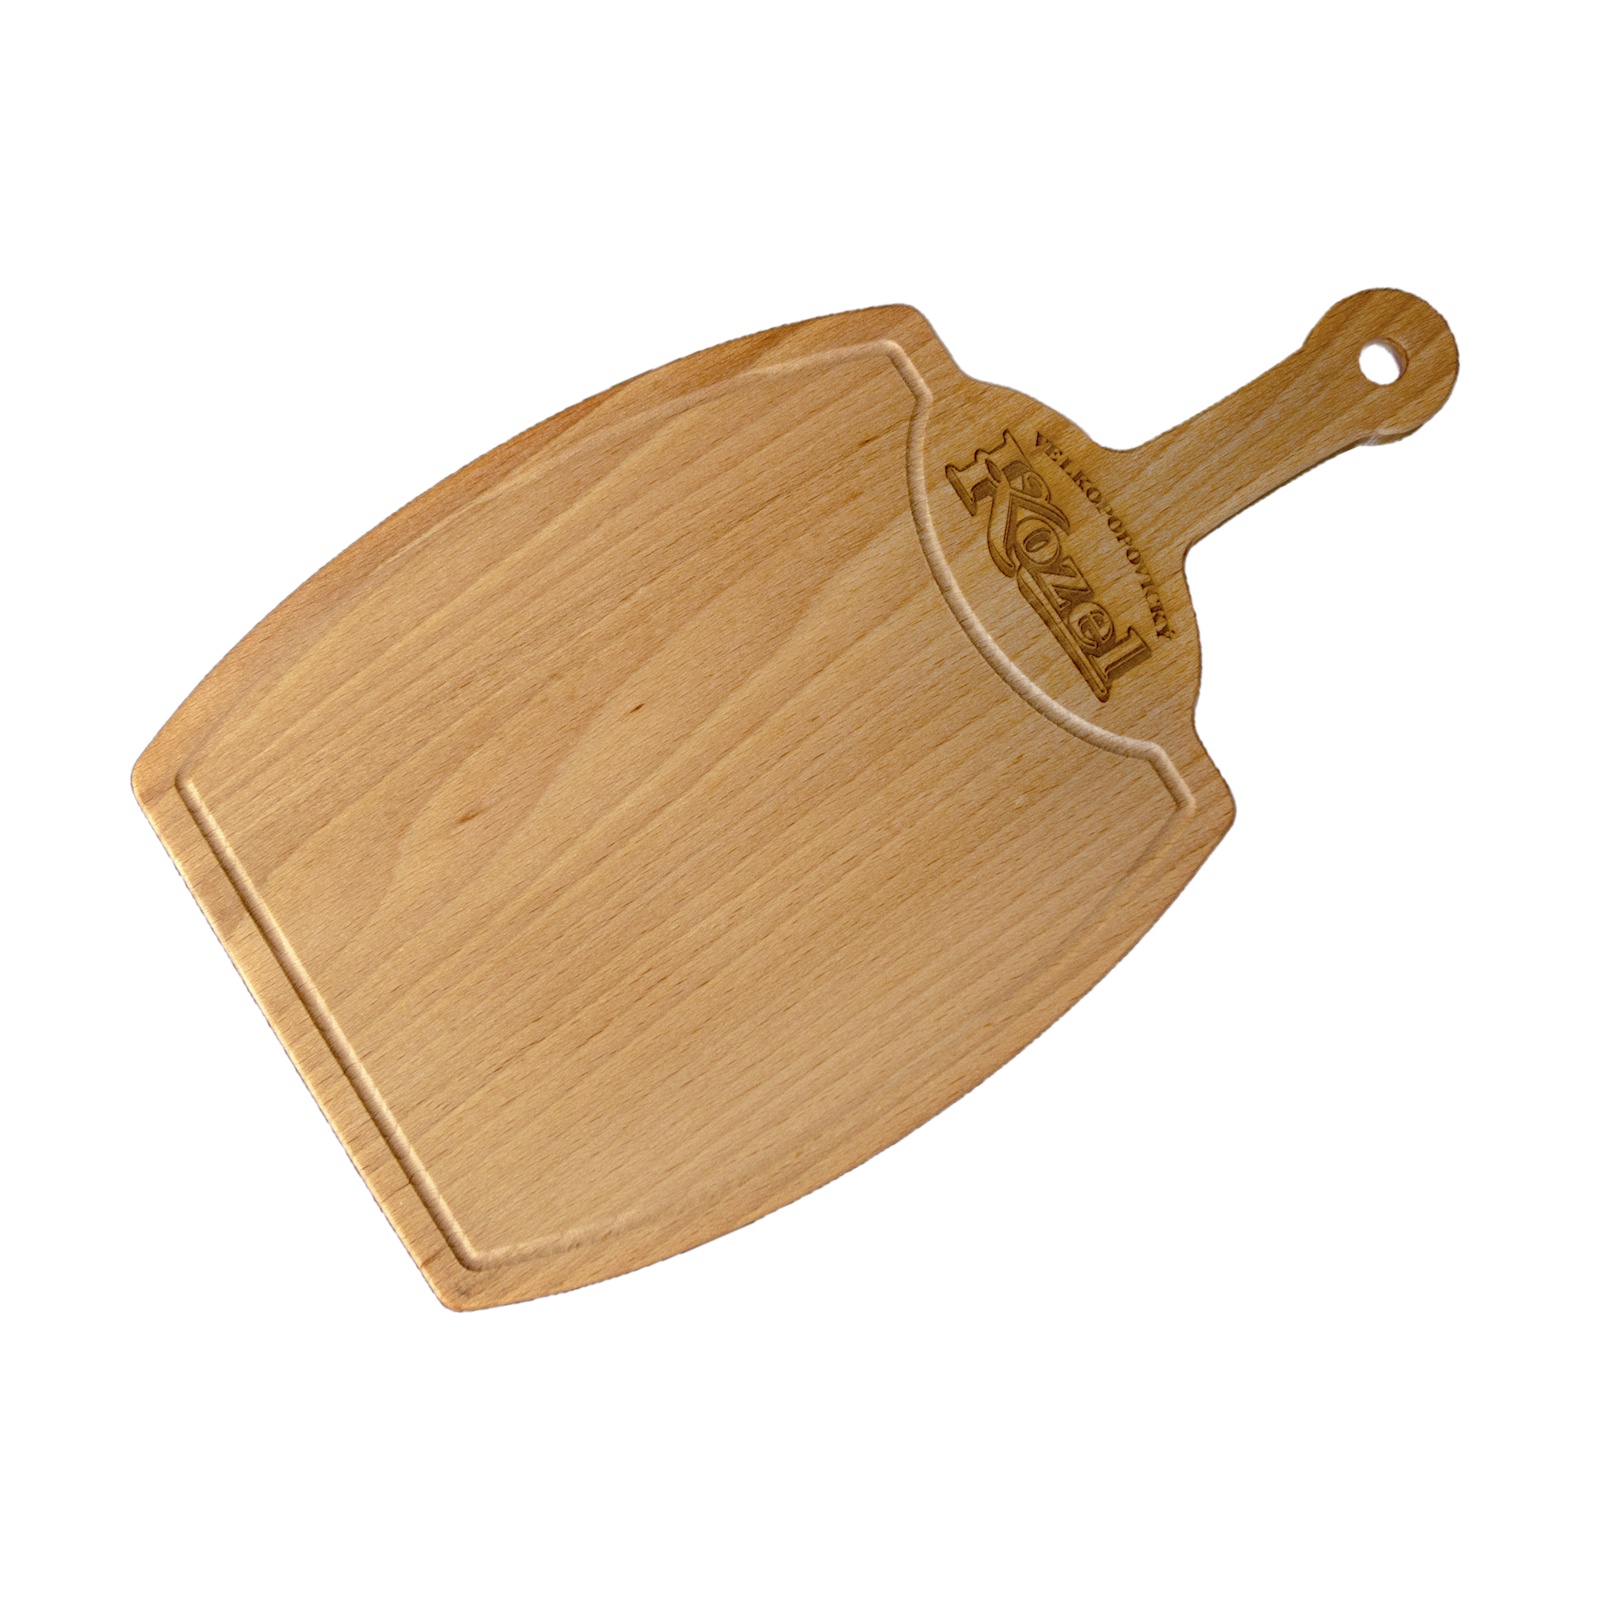 Kozel wooden board - small keg